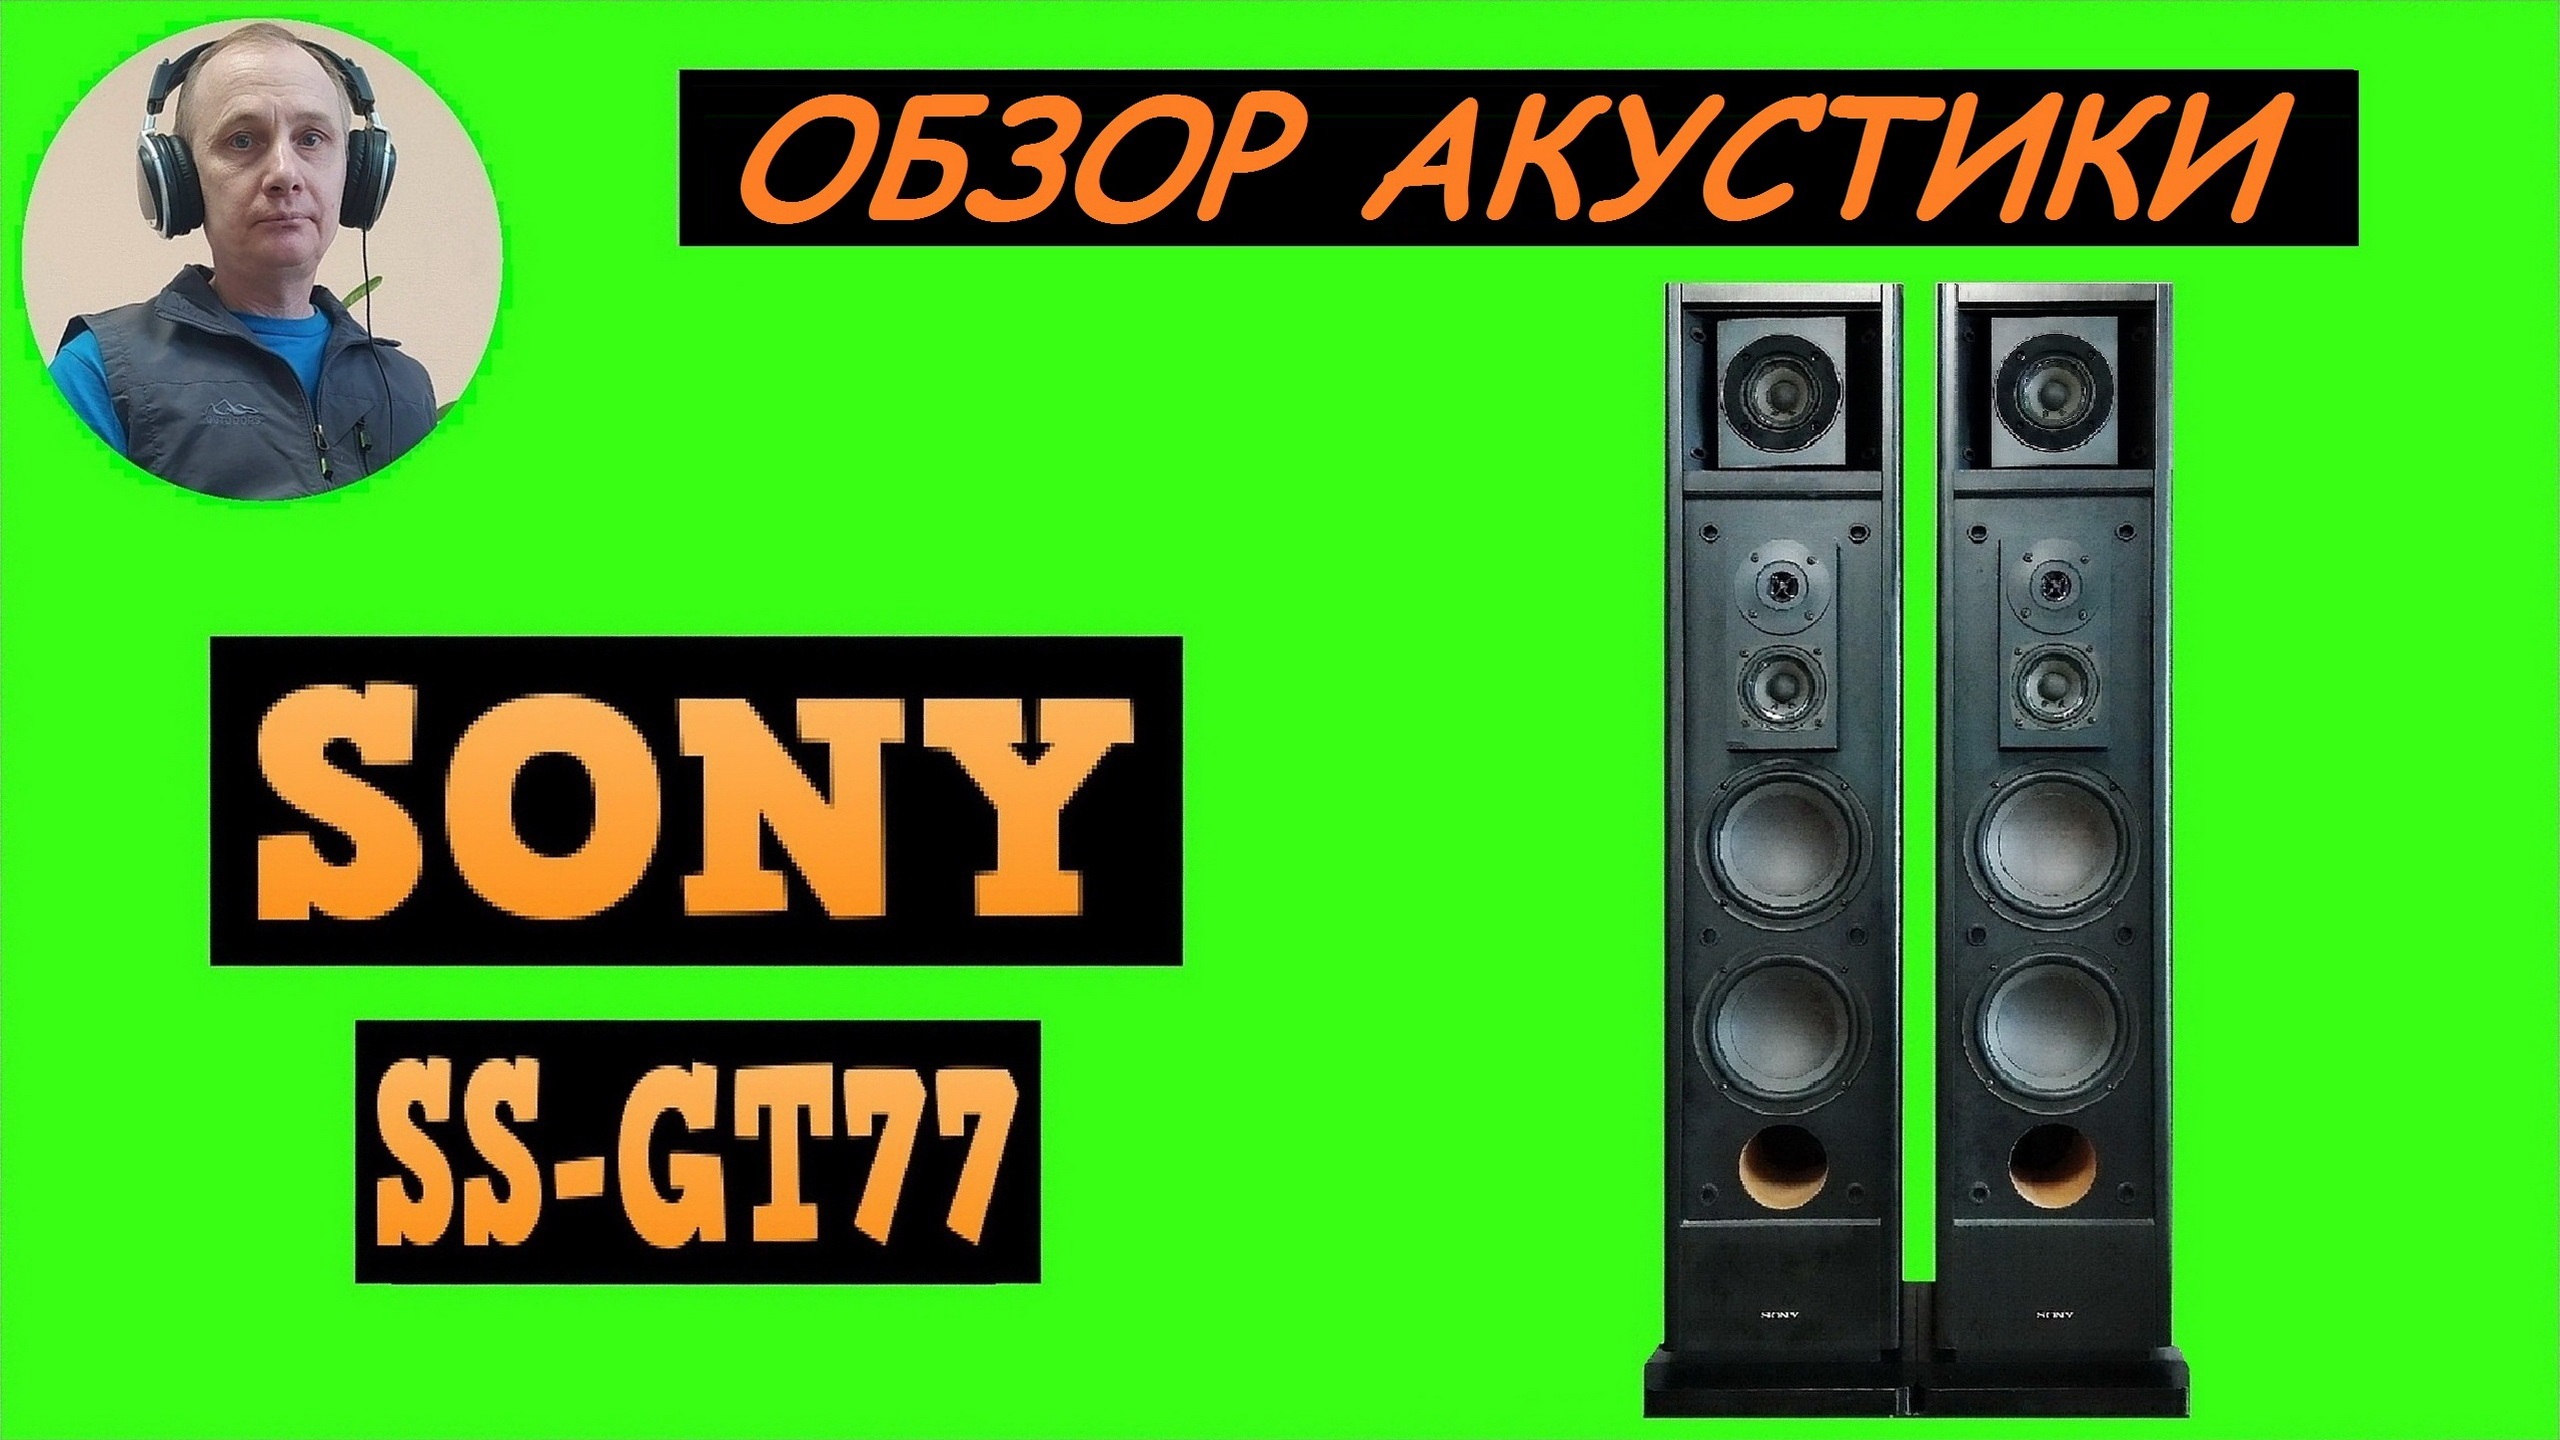 Обзор акустики SONY SS-GT77